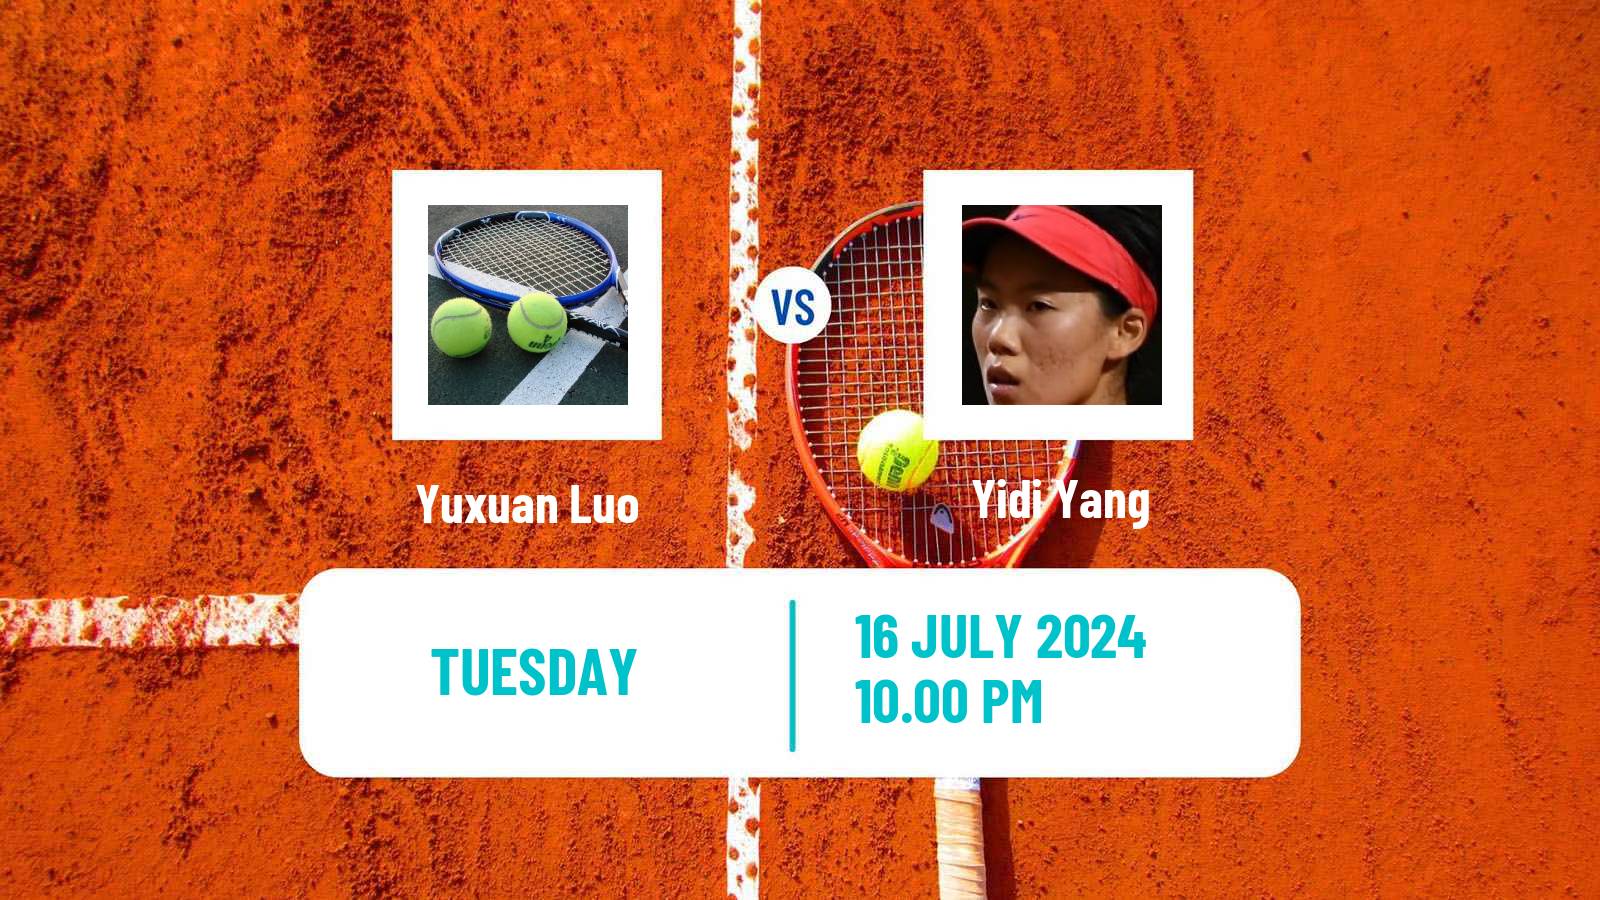 Tennis ITF W35 Tianjin 2 Women Yuxuan Luo - Yidi Yang